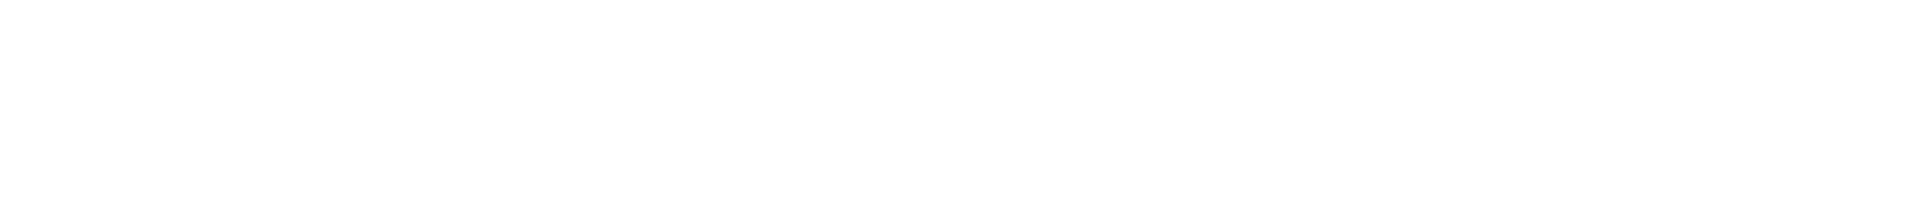 TPP - Primary logo - WHT (1)